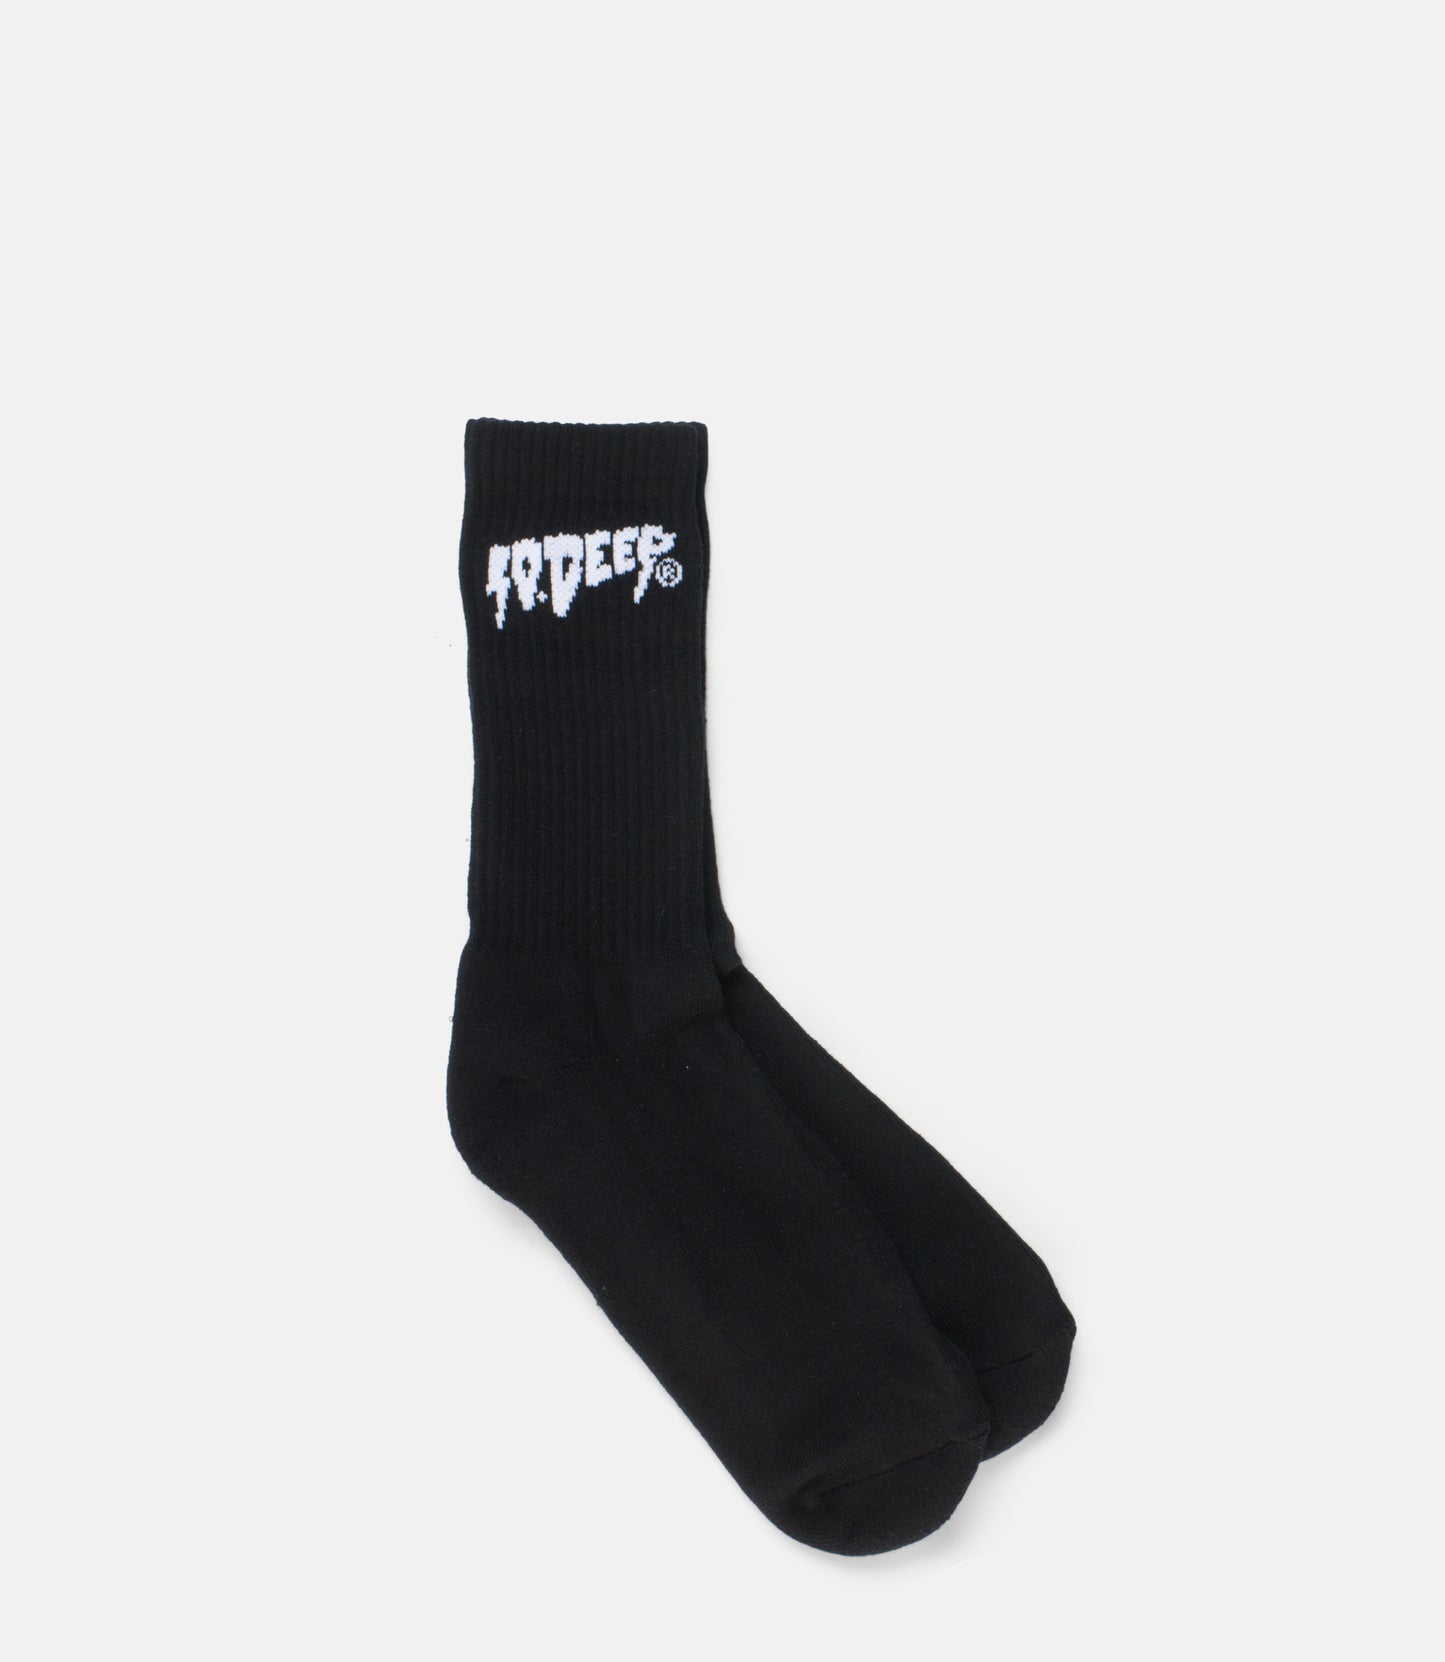 10Deep - Sound & Fury Socks, Black